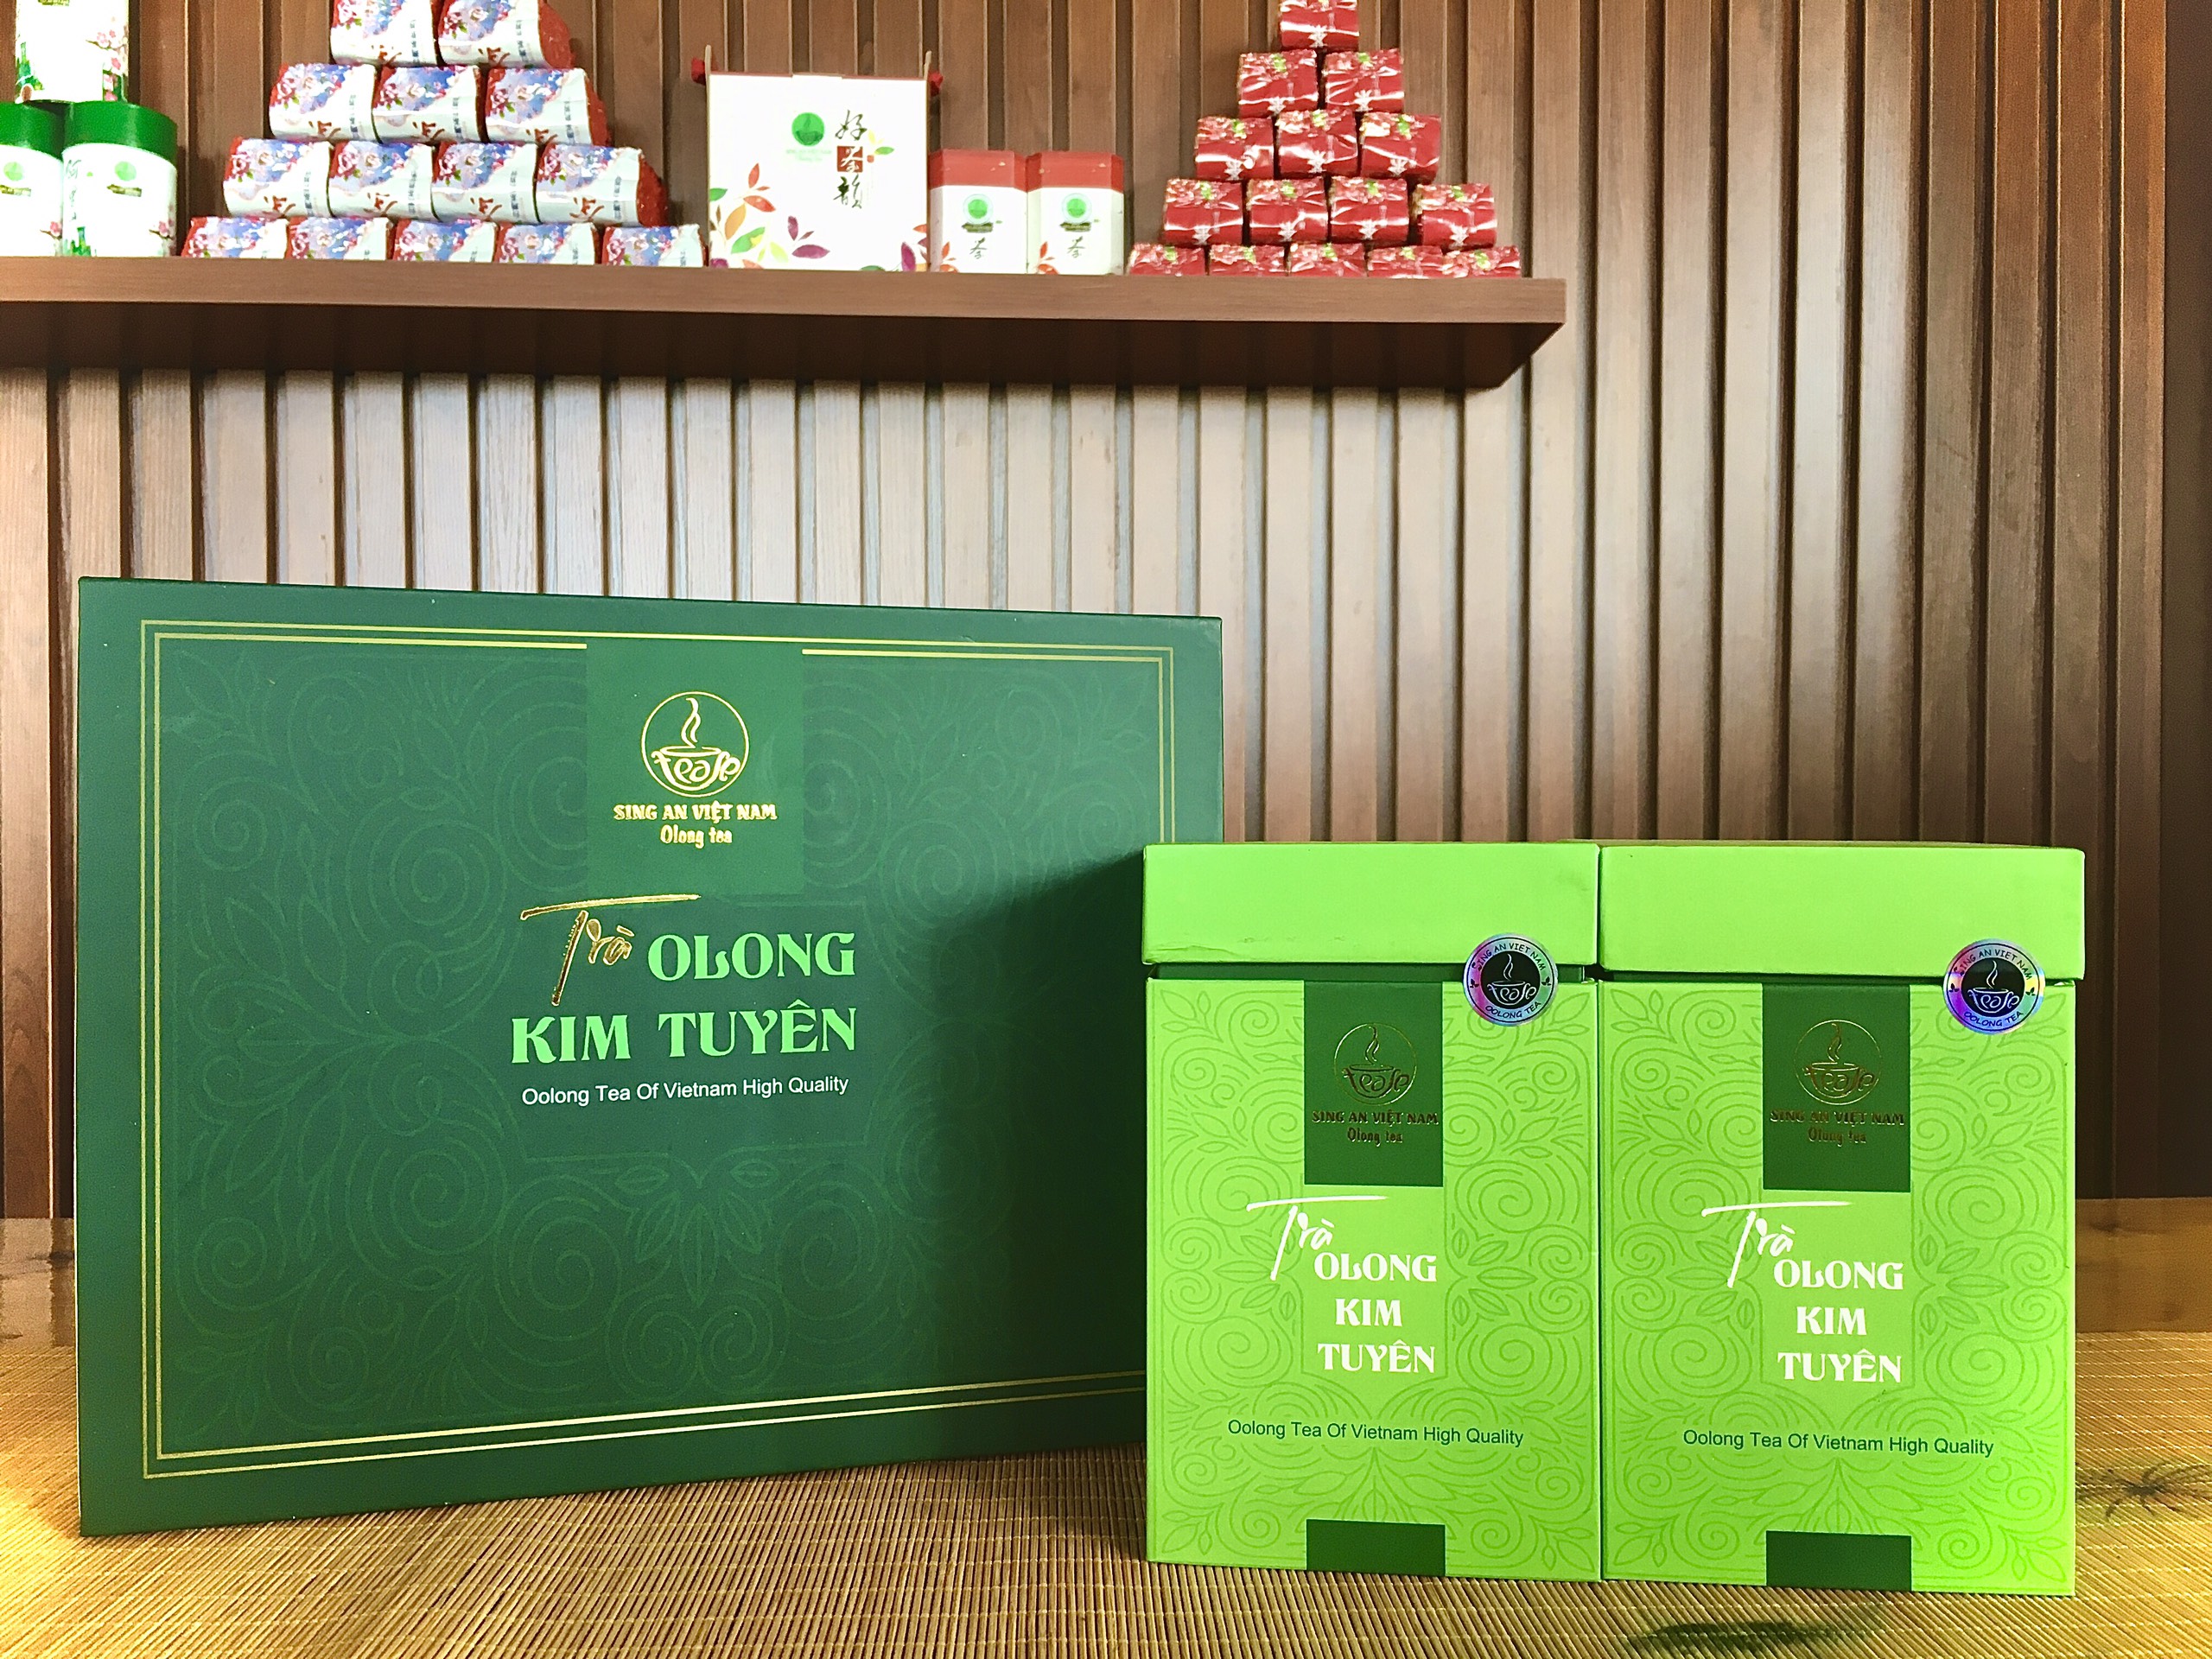 500gr Kim Tuyen tea box